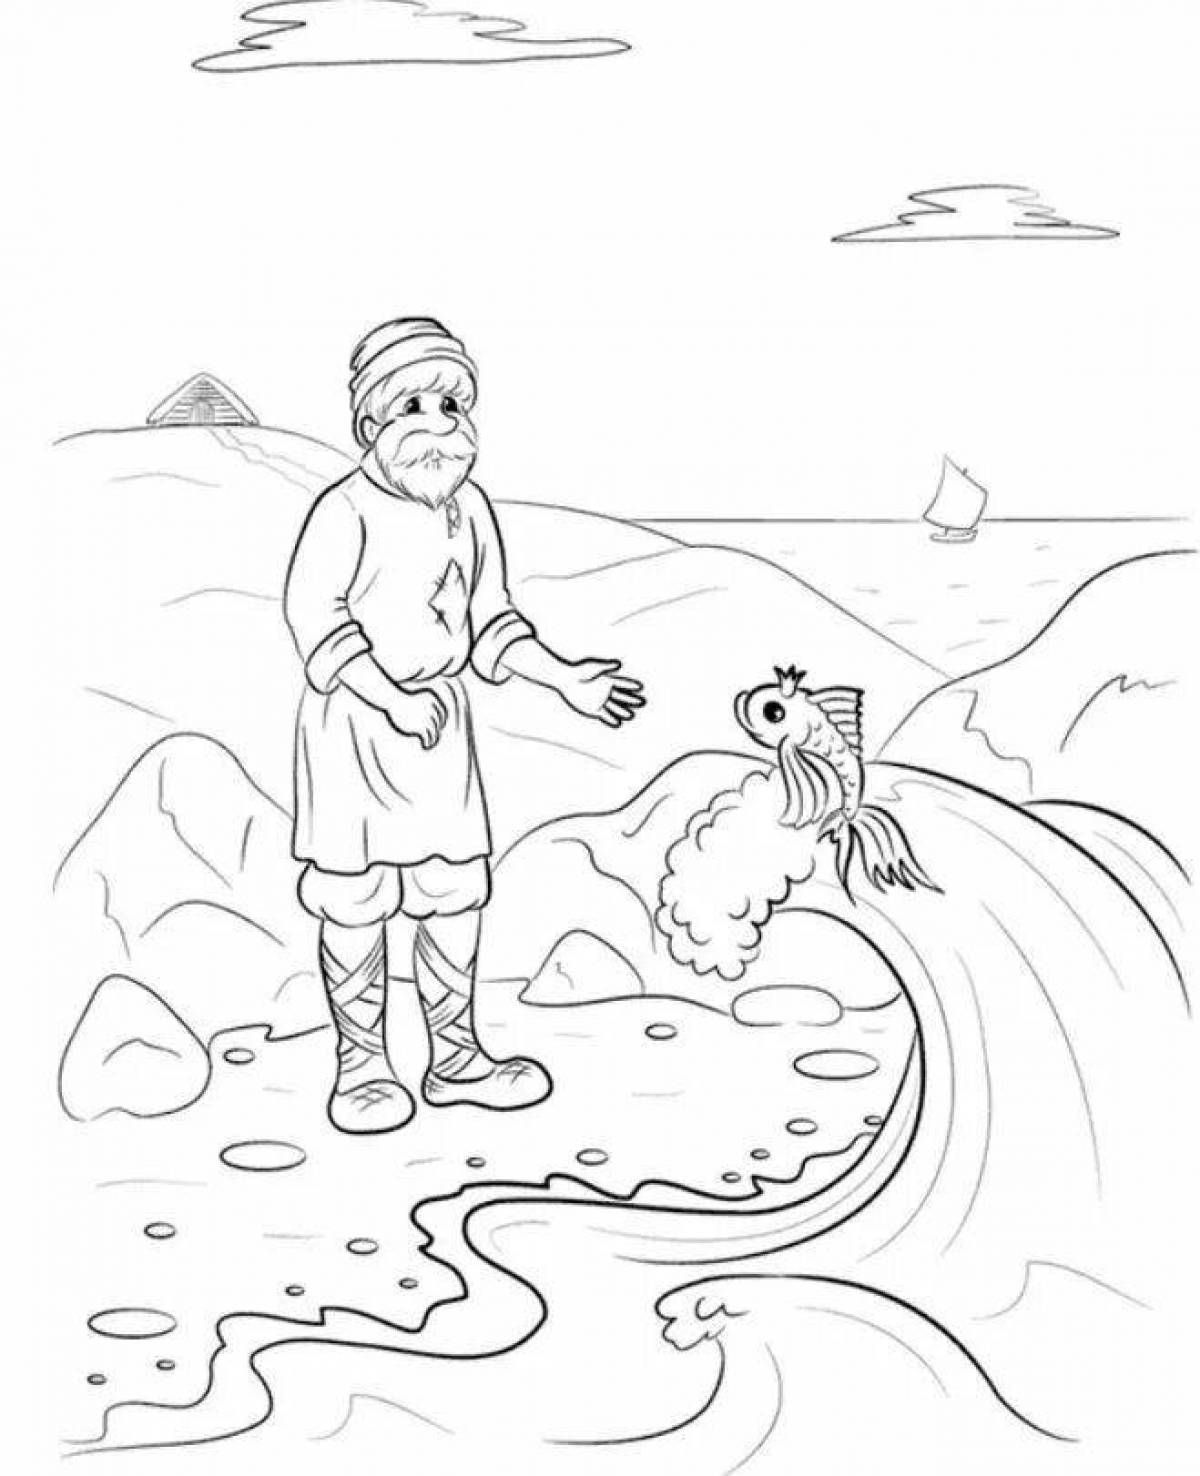 Блестящая раскраска-иллюстрация к сказке о рыбаке и рыбке